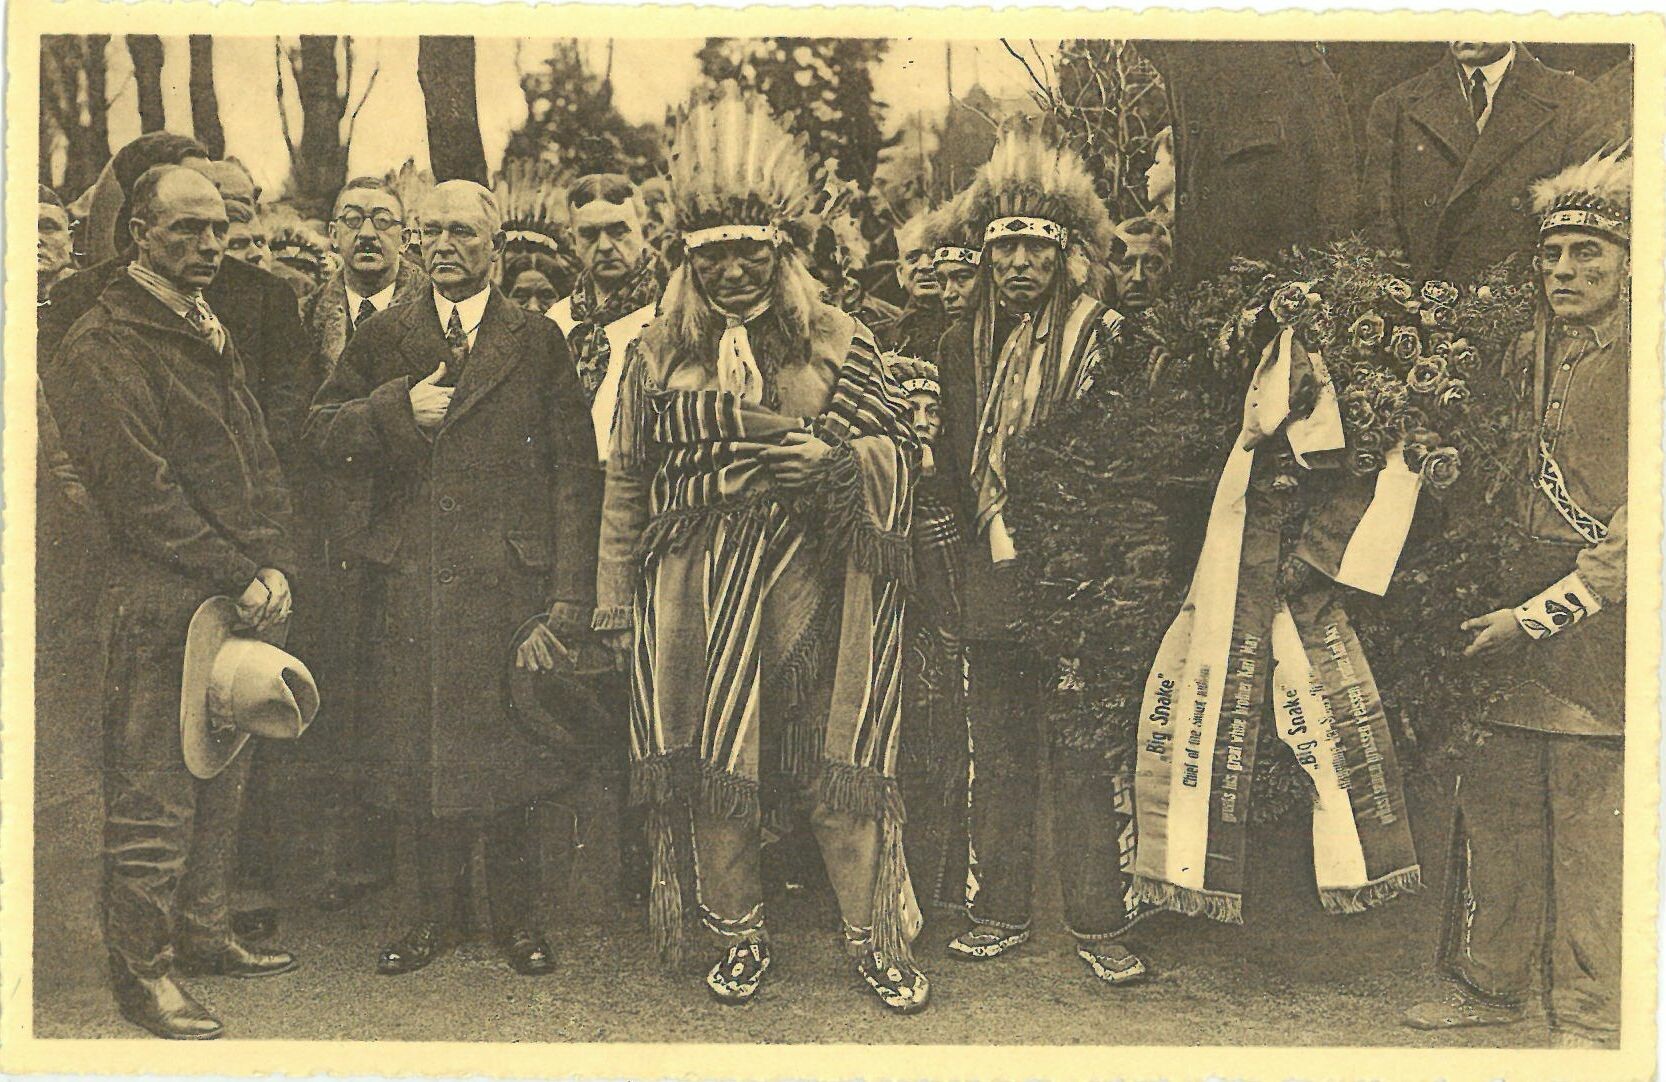 Sioux-Indianer ehren Karl May an seiner letzten Ruhestätte in Radebeul. Januar 1928 (Karl-May-Museum gGmbH RR-R)